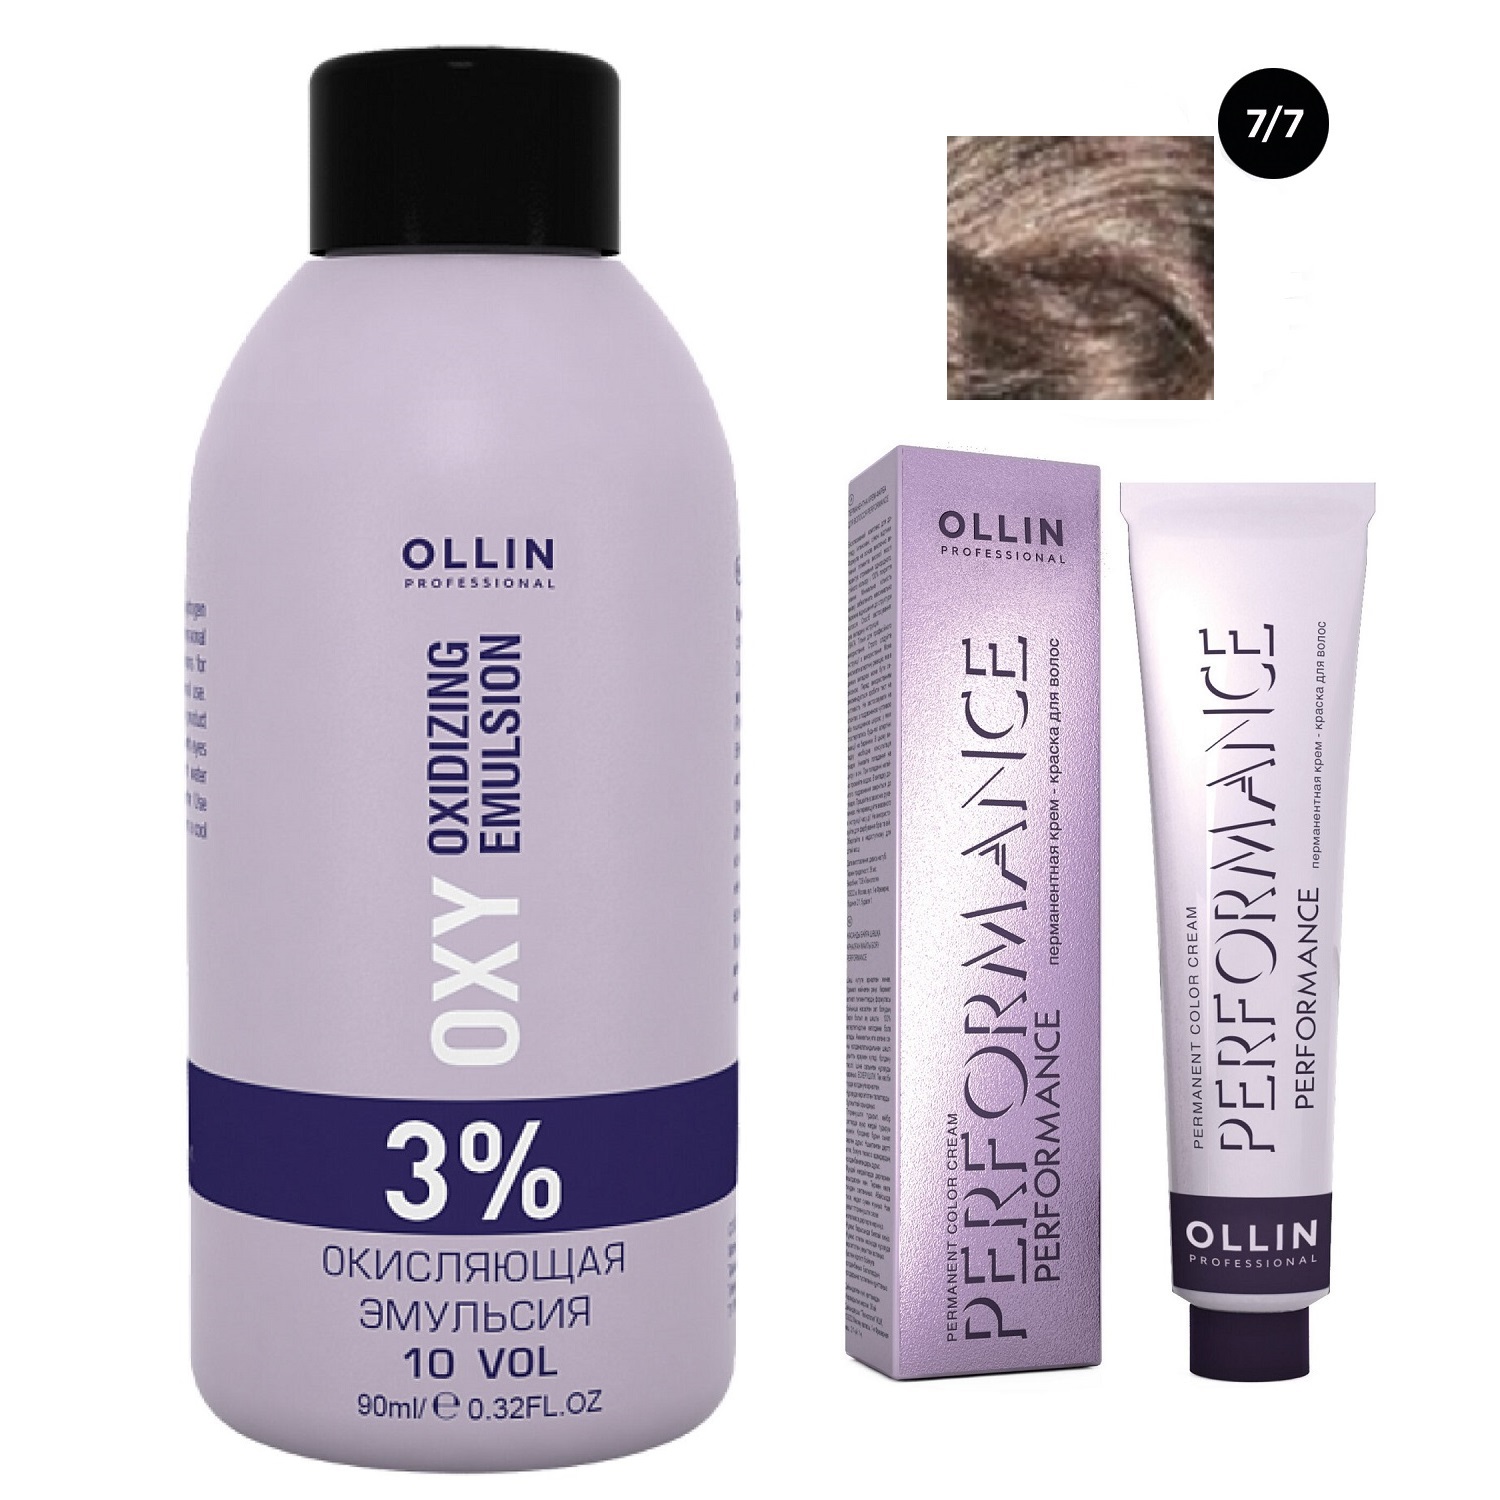 цена Ollin Professional Набор Перманентная крем-краска для волос Ollin Performance оттенок 7/7 русый коричневый 60 мл + Окисляющая эмульсия Oxy 3% 90 мл (Ollin Professional, Performance)